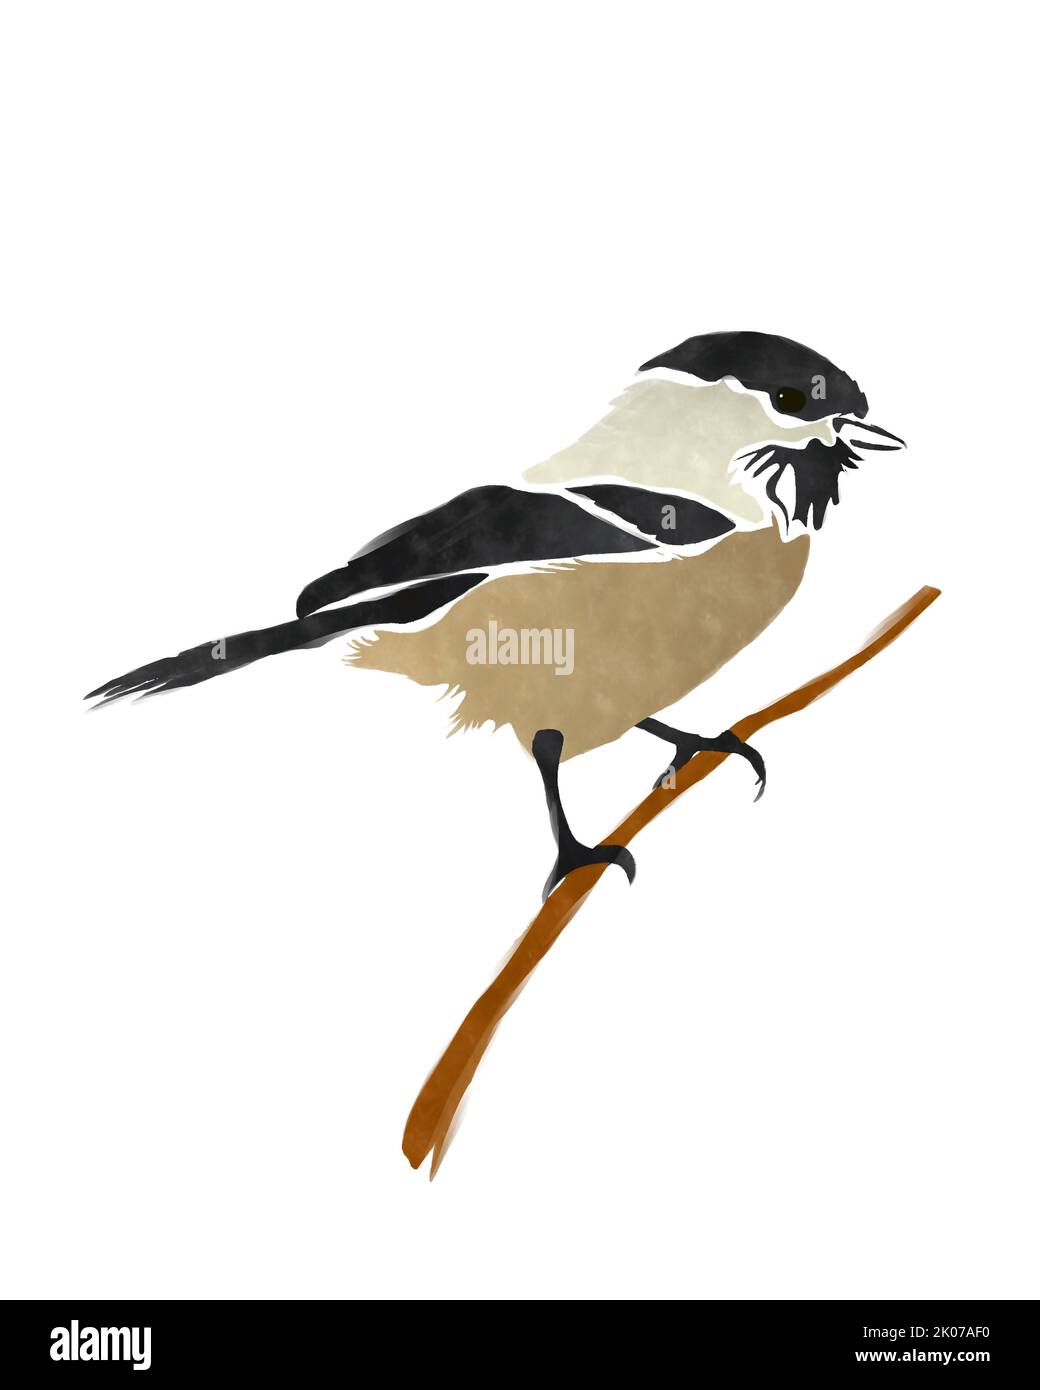 Oiseau de chickadee à capuchon noir sur fond blanc Banque D'Images